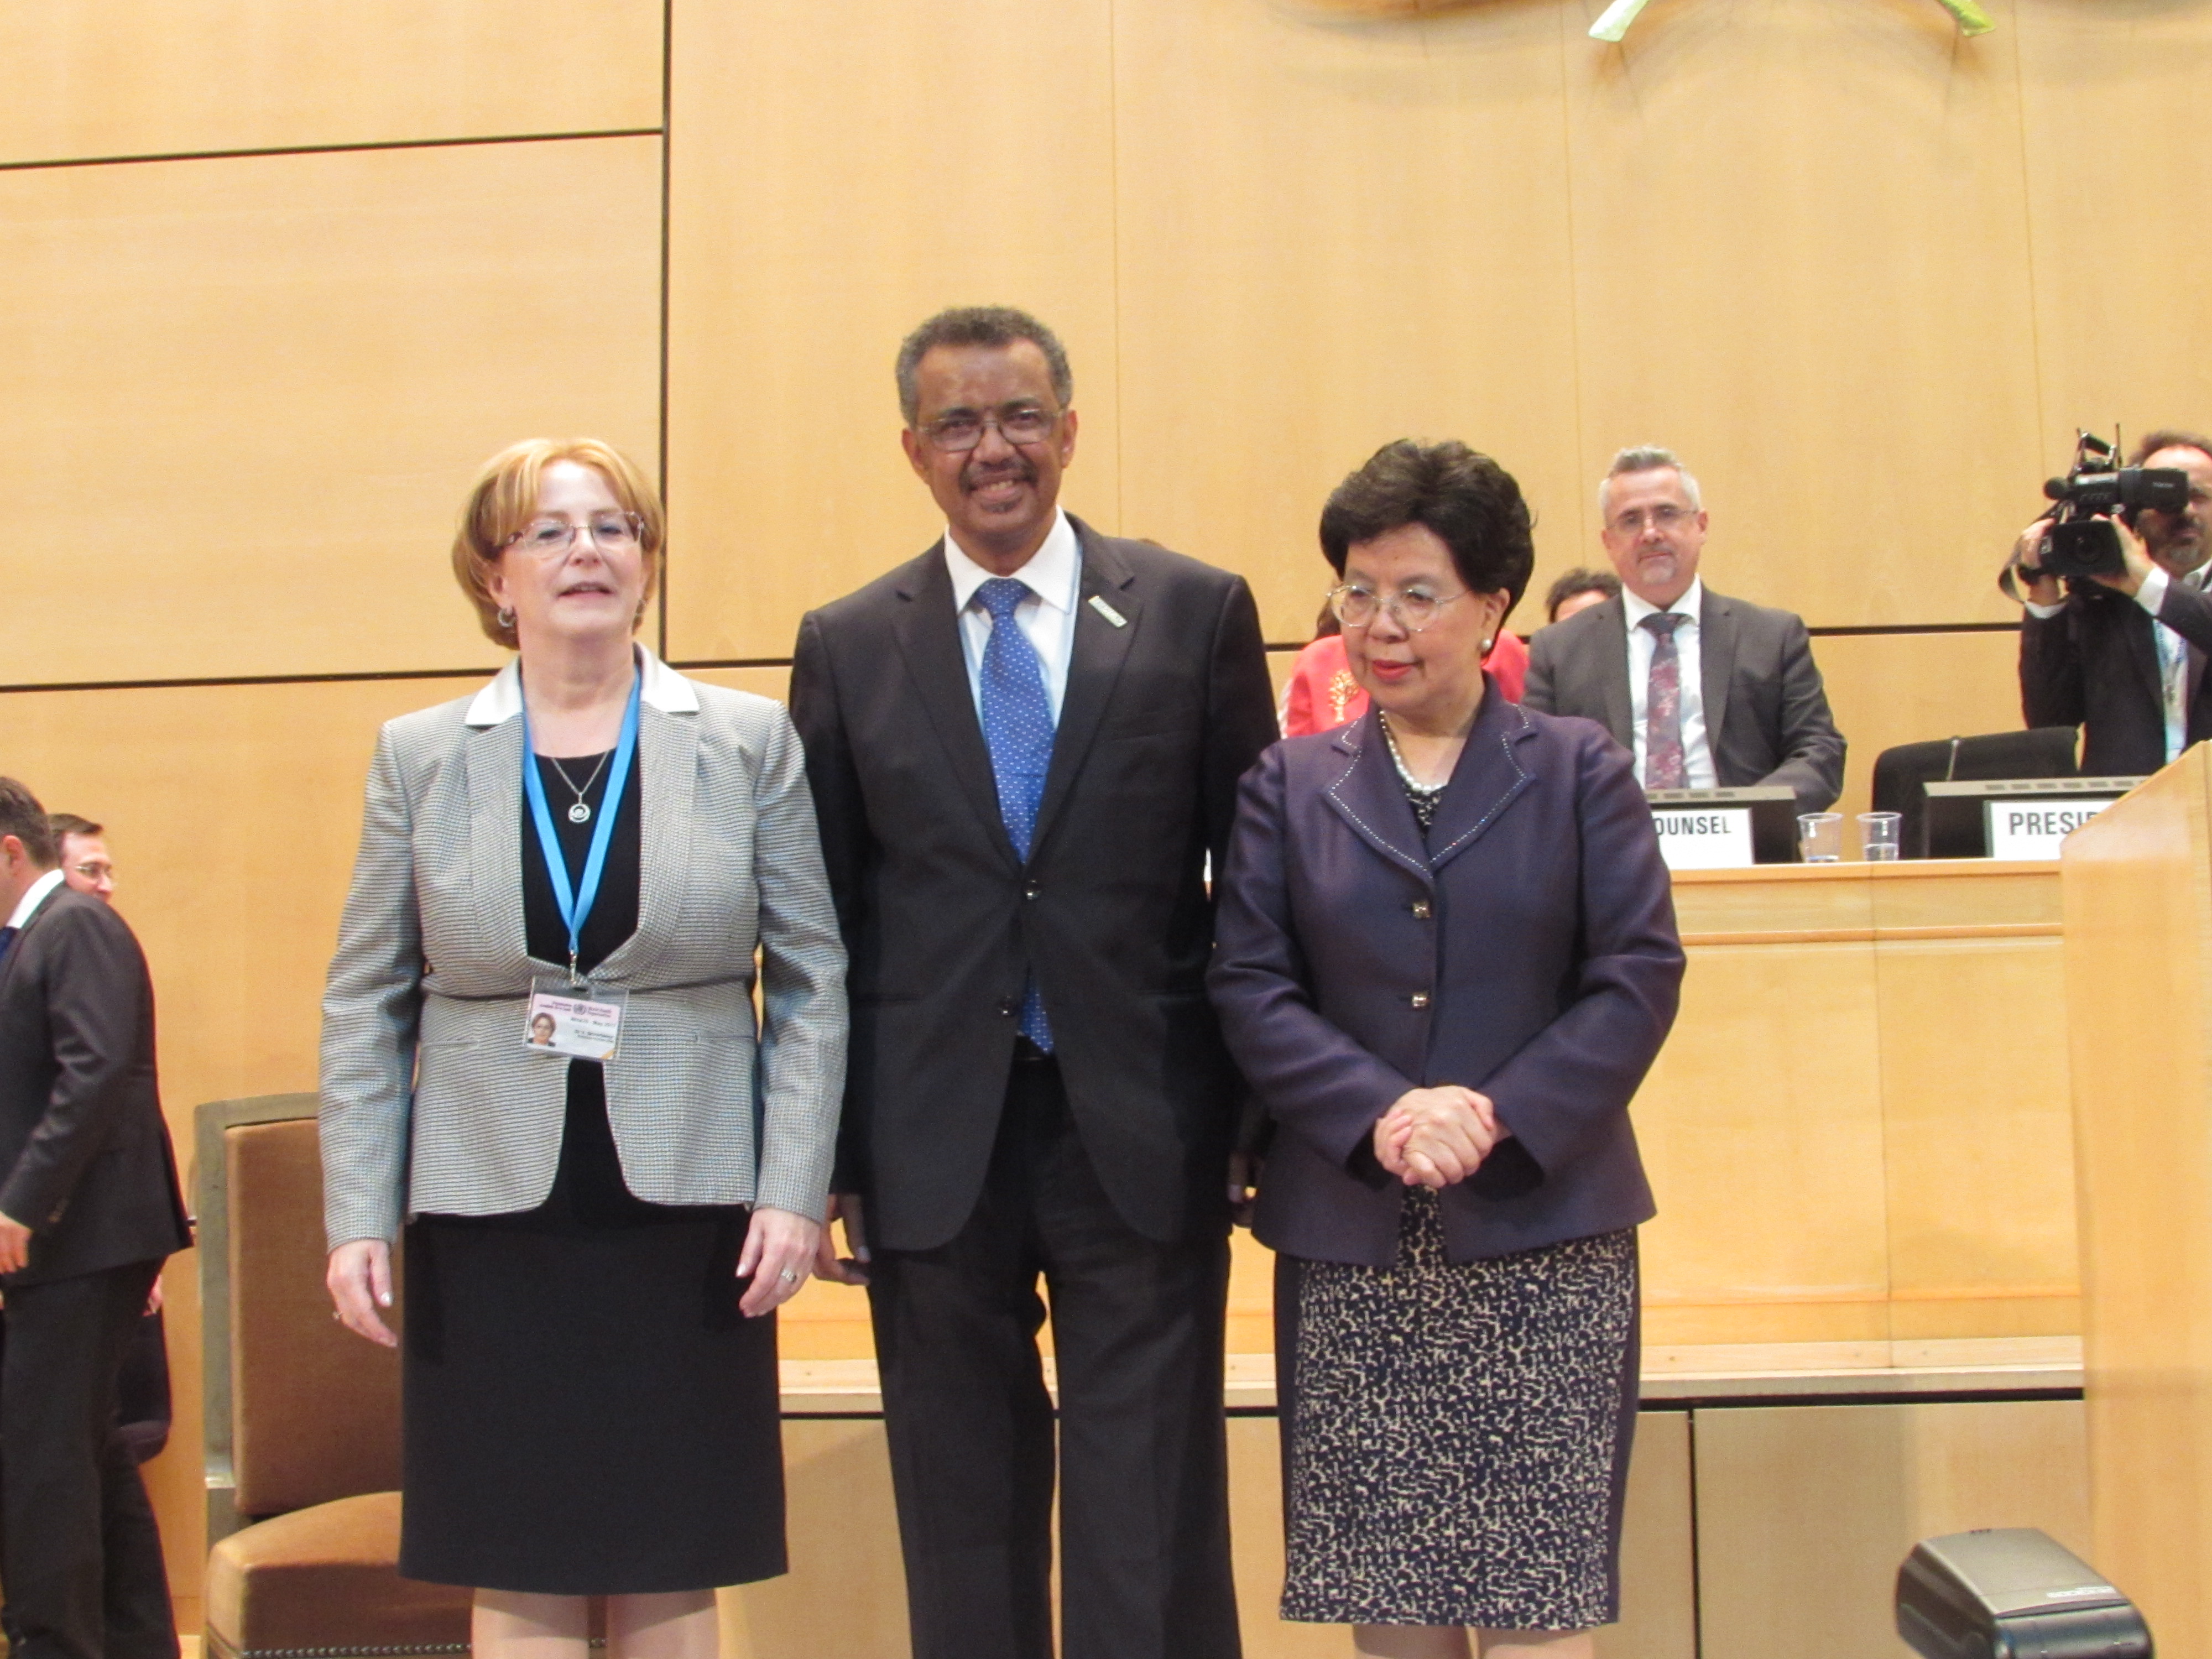 أدهانوم غيبريسوس من أثيوبيا يفوز بمنصب منصب المدير العام لمنظمة الصحة العالمية